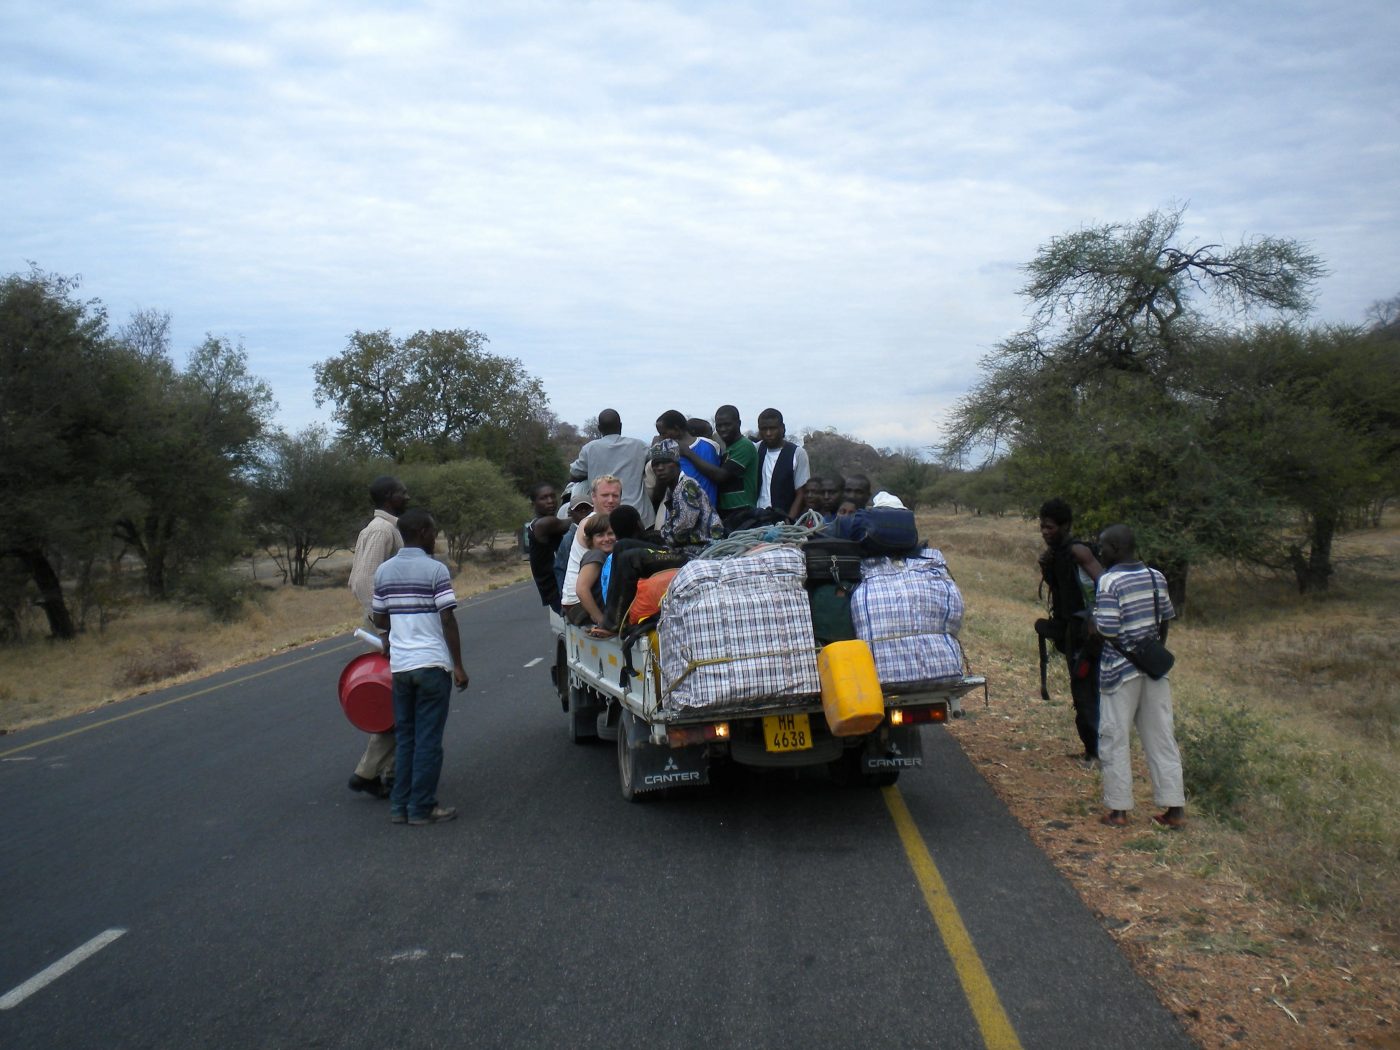 Public transport in Malawi